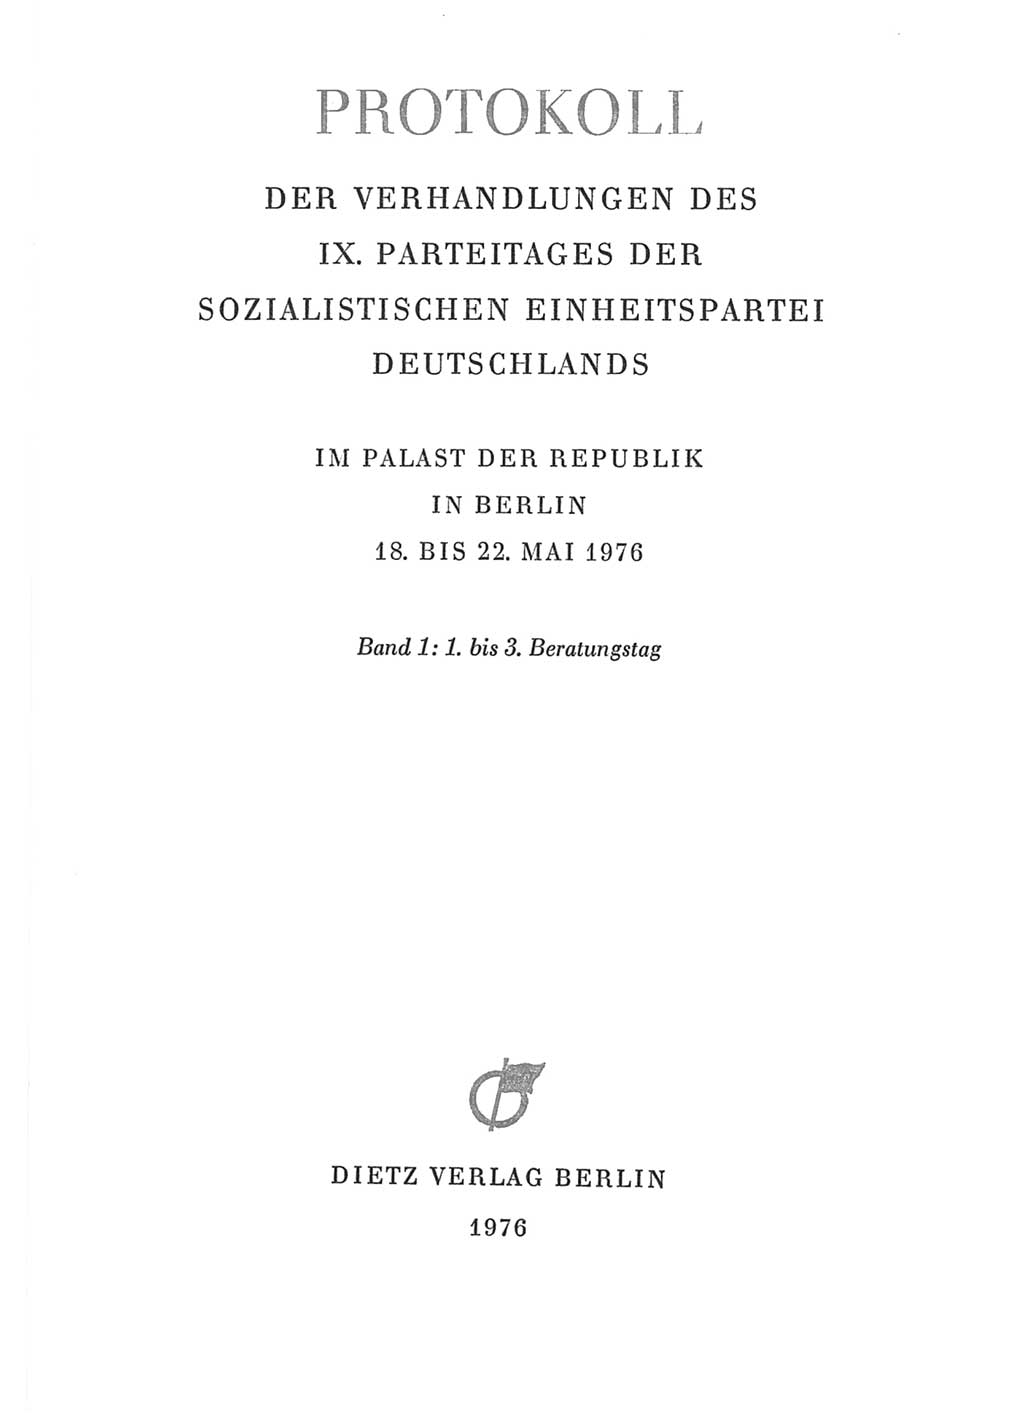 Protokoll der Verhandlungen des Ⅸ. Parteitages der Sozialistischen Einheitspartei Deutschlands (SED) [Deutsche Demokratische Republik (DDR)] 1976, Band 1, Seite 3 (Prot. Verh. Ⅸ. PT SED DDR 1976, Bd. 1, S. 3)